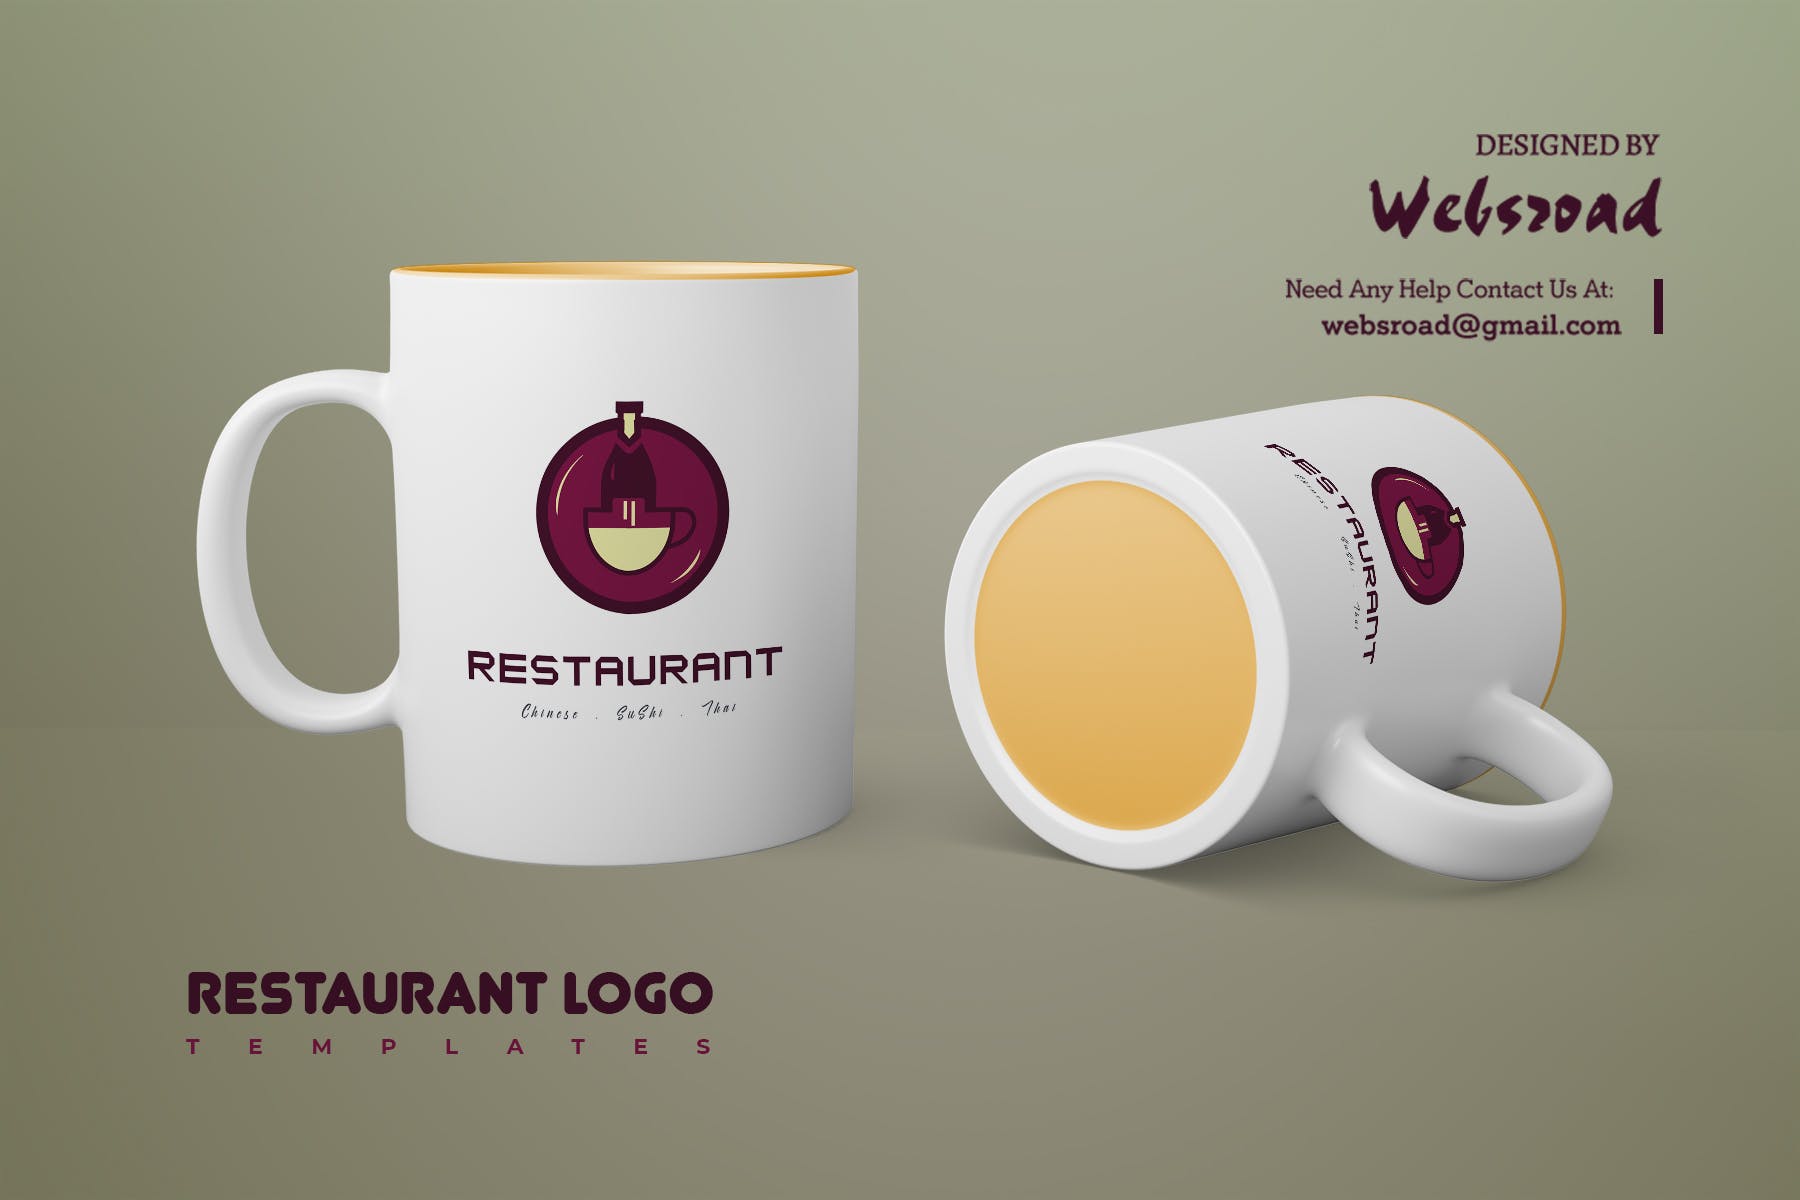 餐馆定制Logo设计第一素材精选模板 Restaurant Logo Templates插图